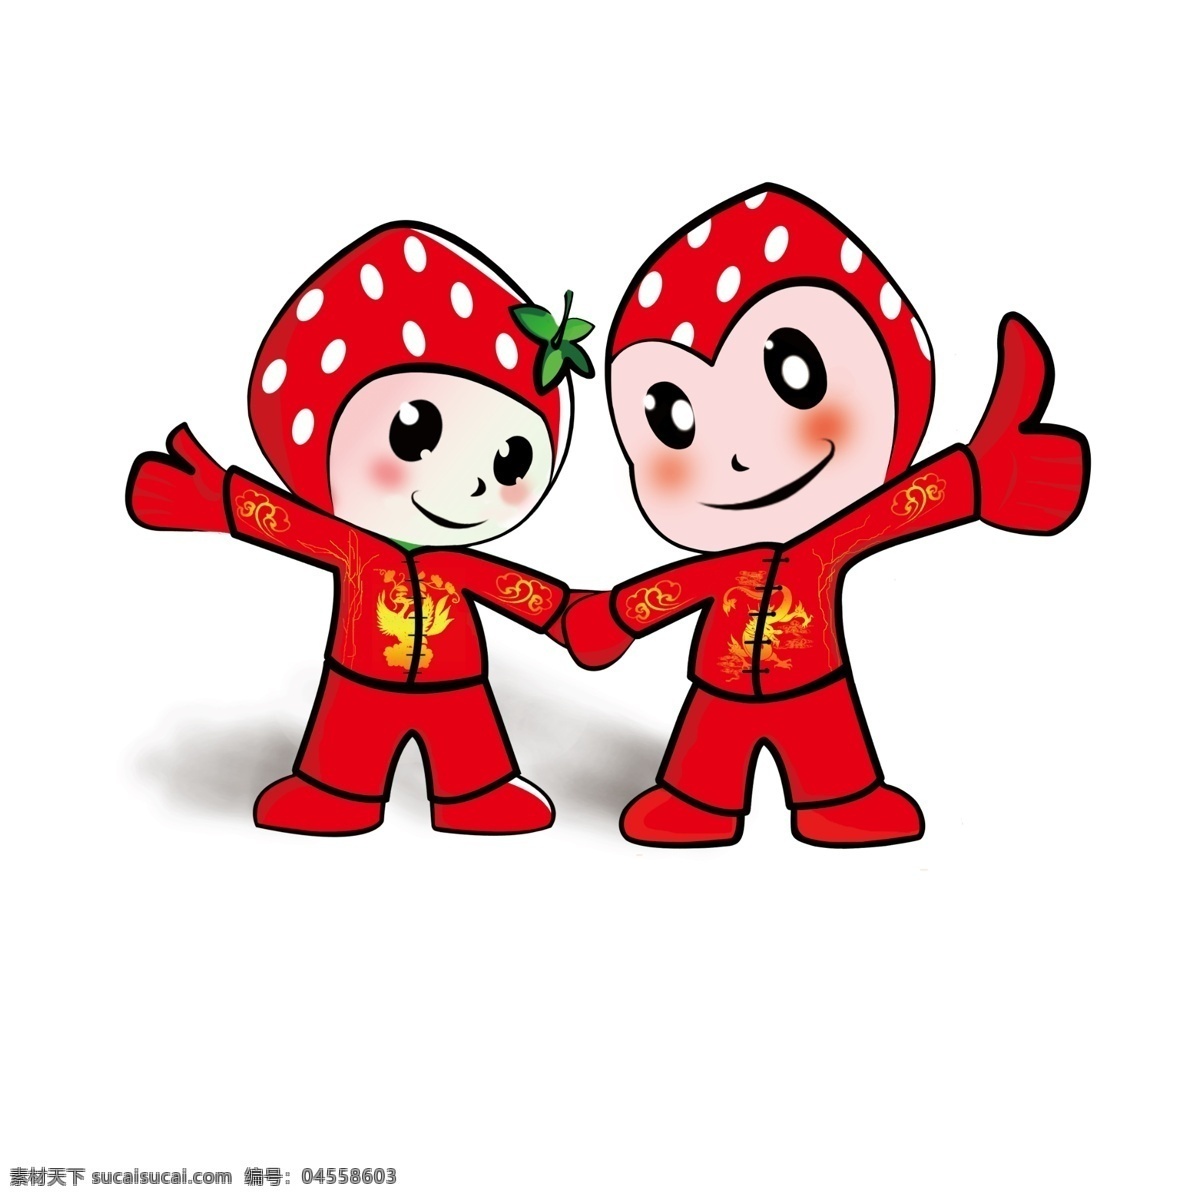 草莓公仔 草莓 草莓娃娃 草莓卡通 卡通草莓 卡通 草莓水果 卡通水果 动漫 动画 动漫设计 分层 源文件 白色